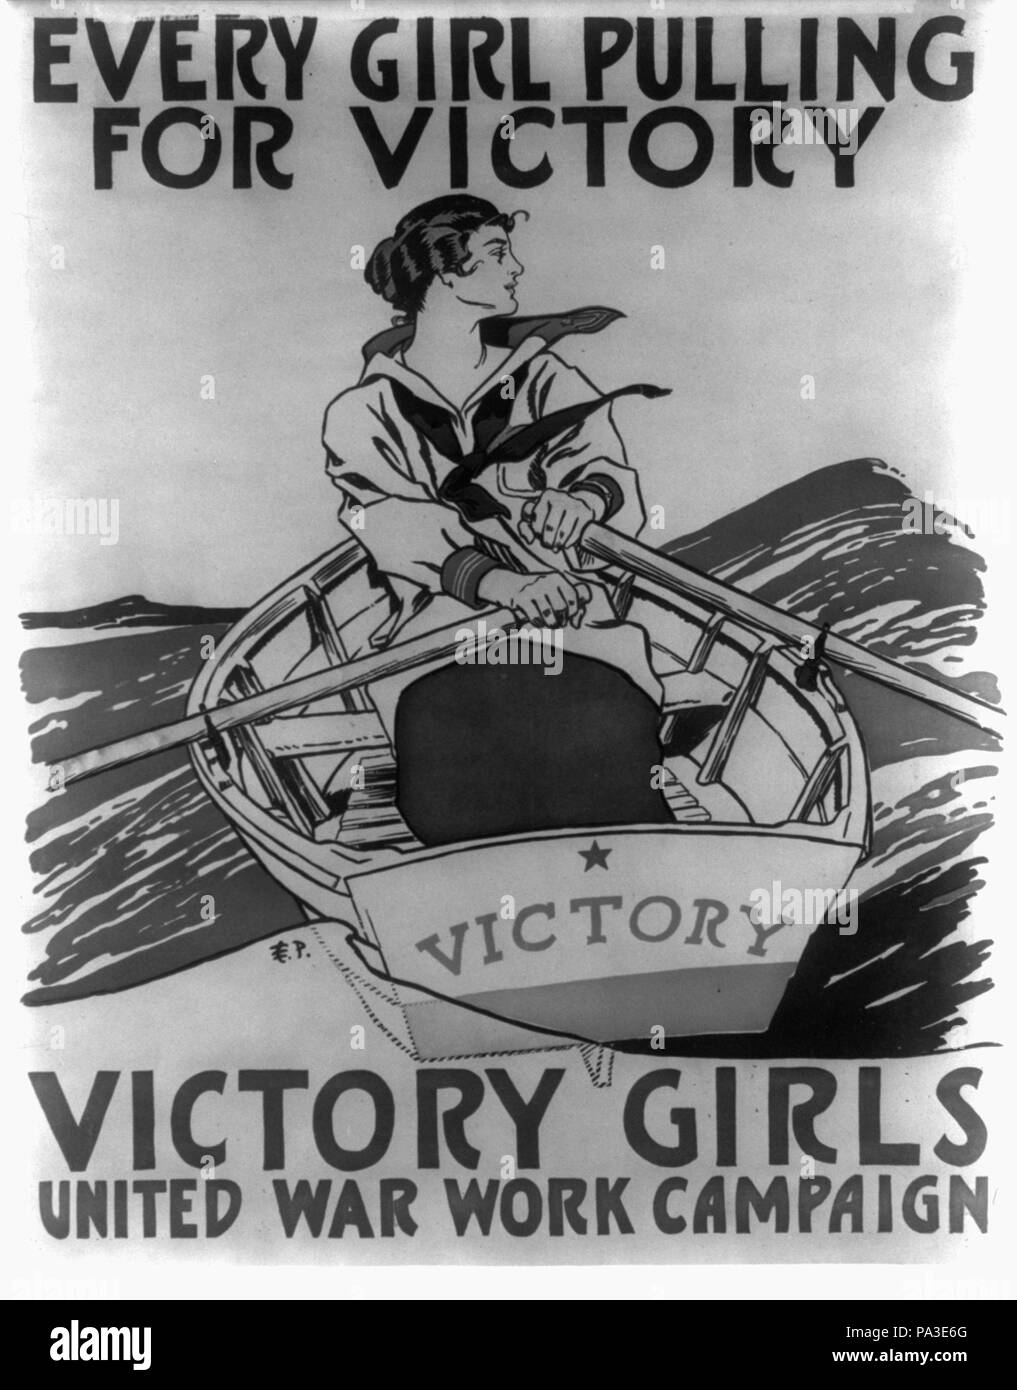 631 ogni ragazza tirando per la vittoria - Vittoria ragazze Regno guerra campagna di lavoro LCCN2002719432 Foto Stock